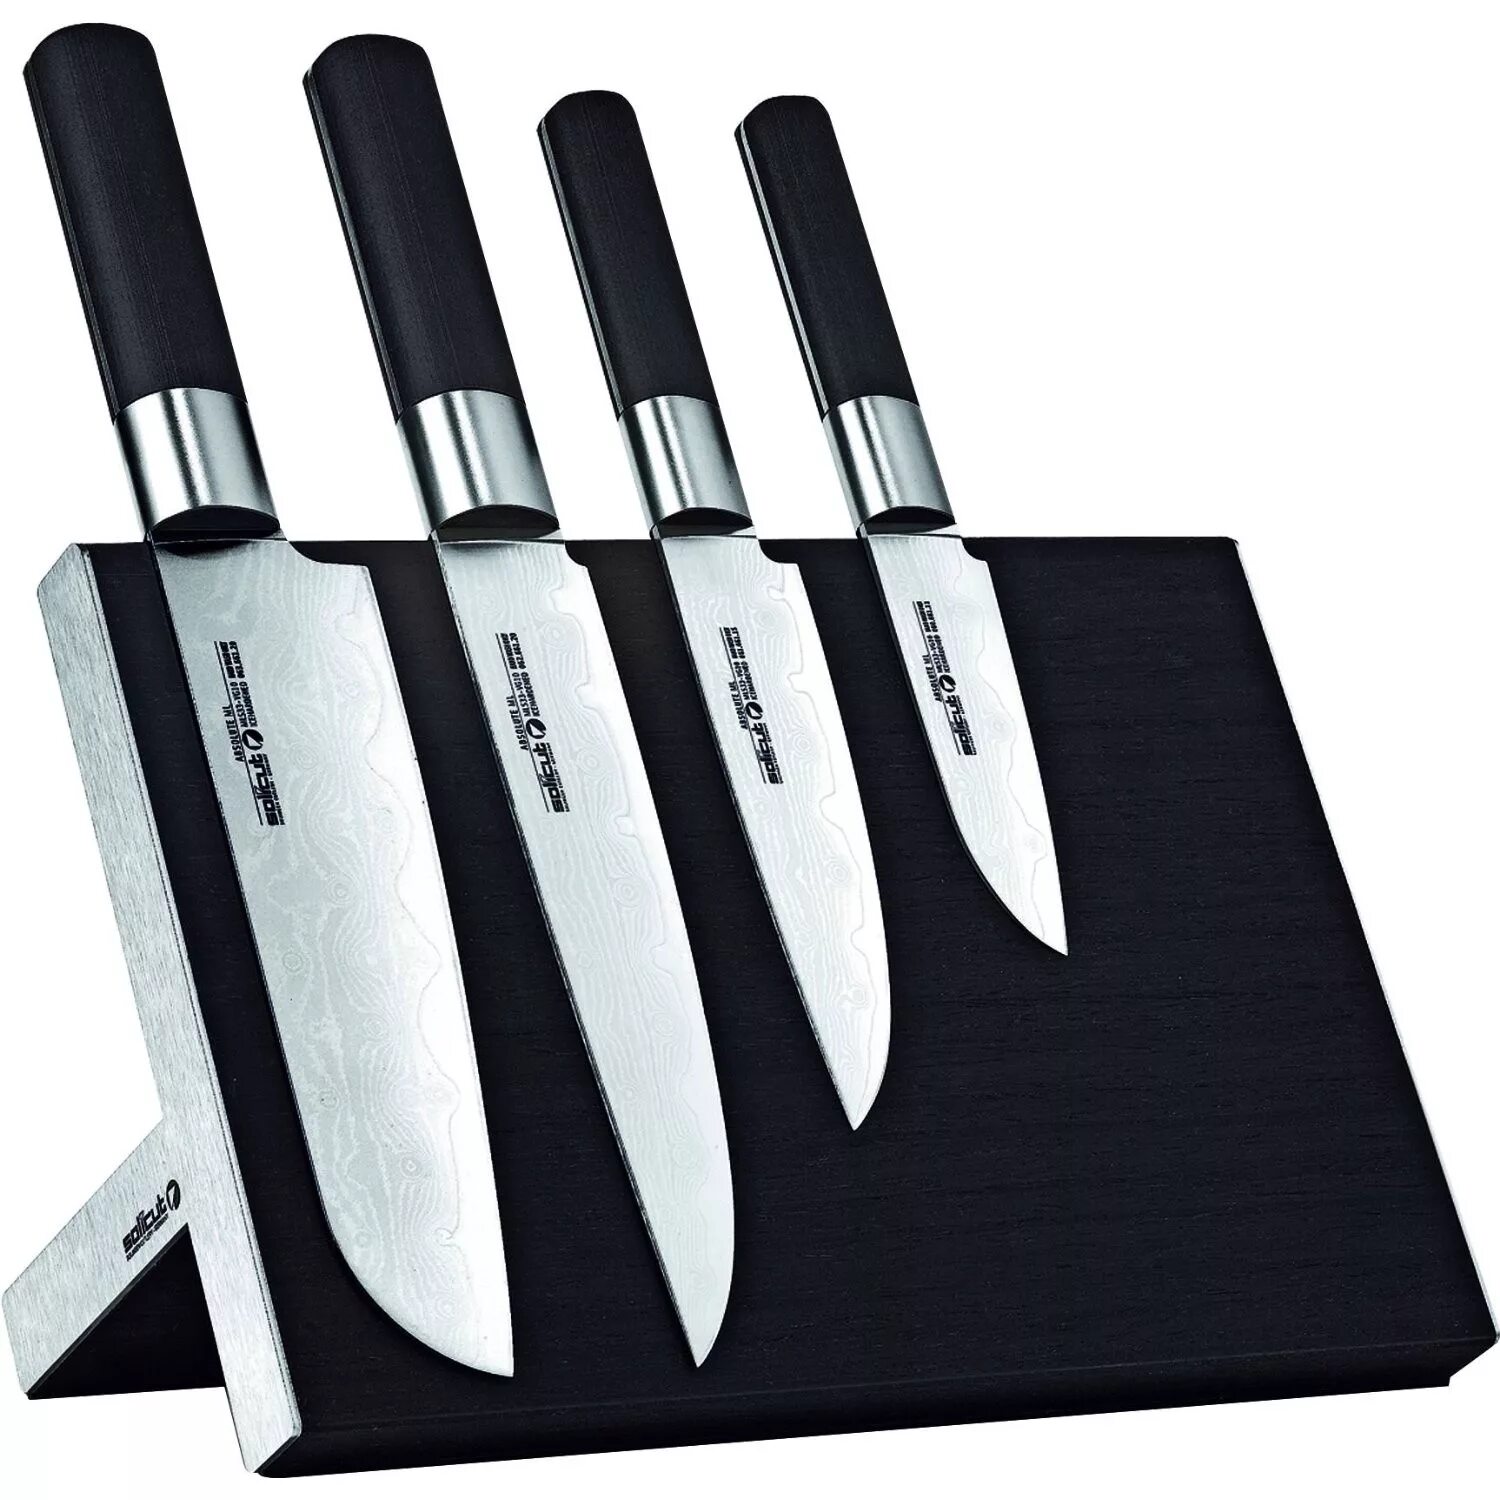 Озон купить ножи кухонные. Кухонный нож. Набор ножей для кухни. Дизайнерские кухонные ножи. Нажми куханые.